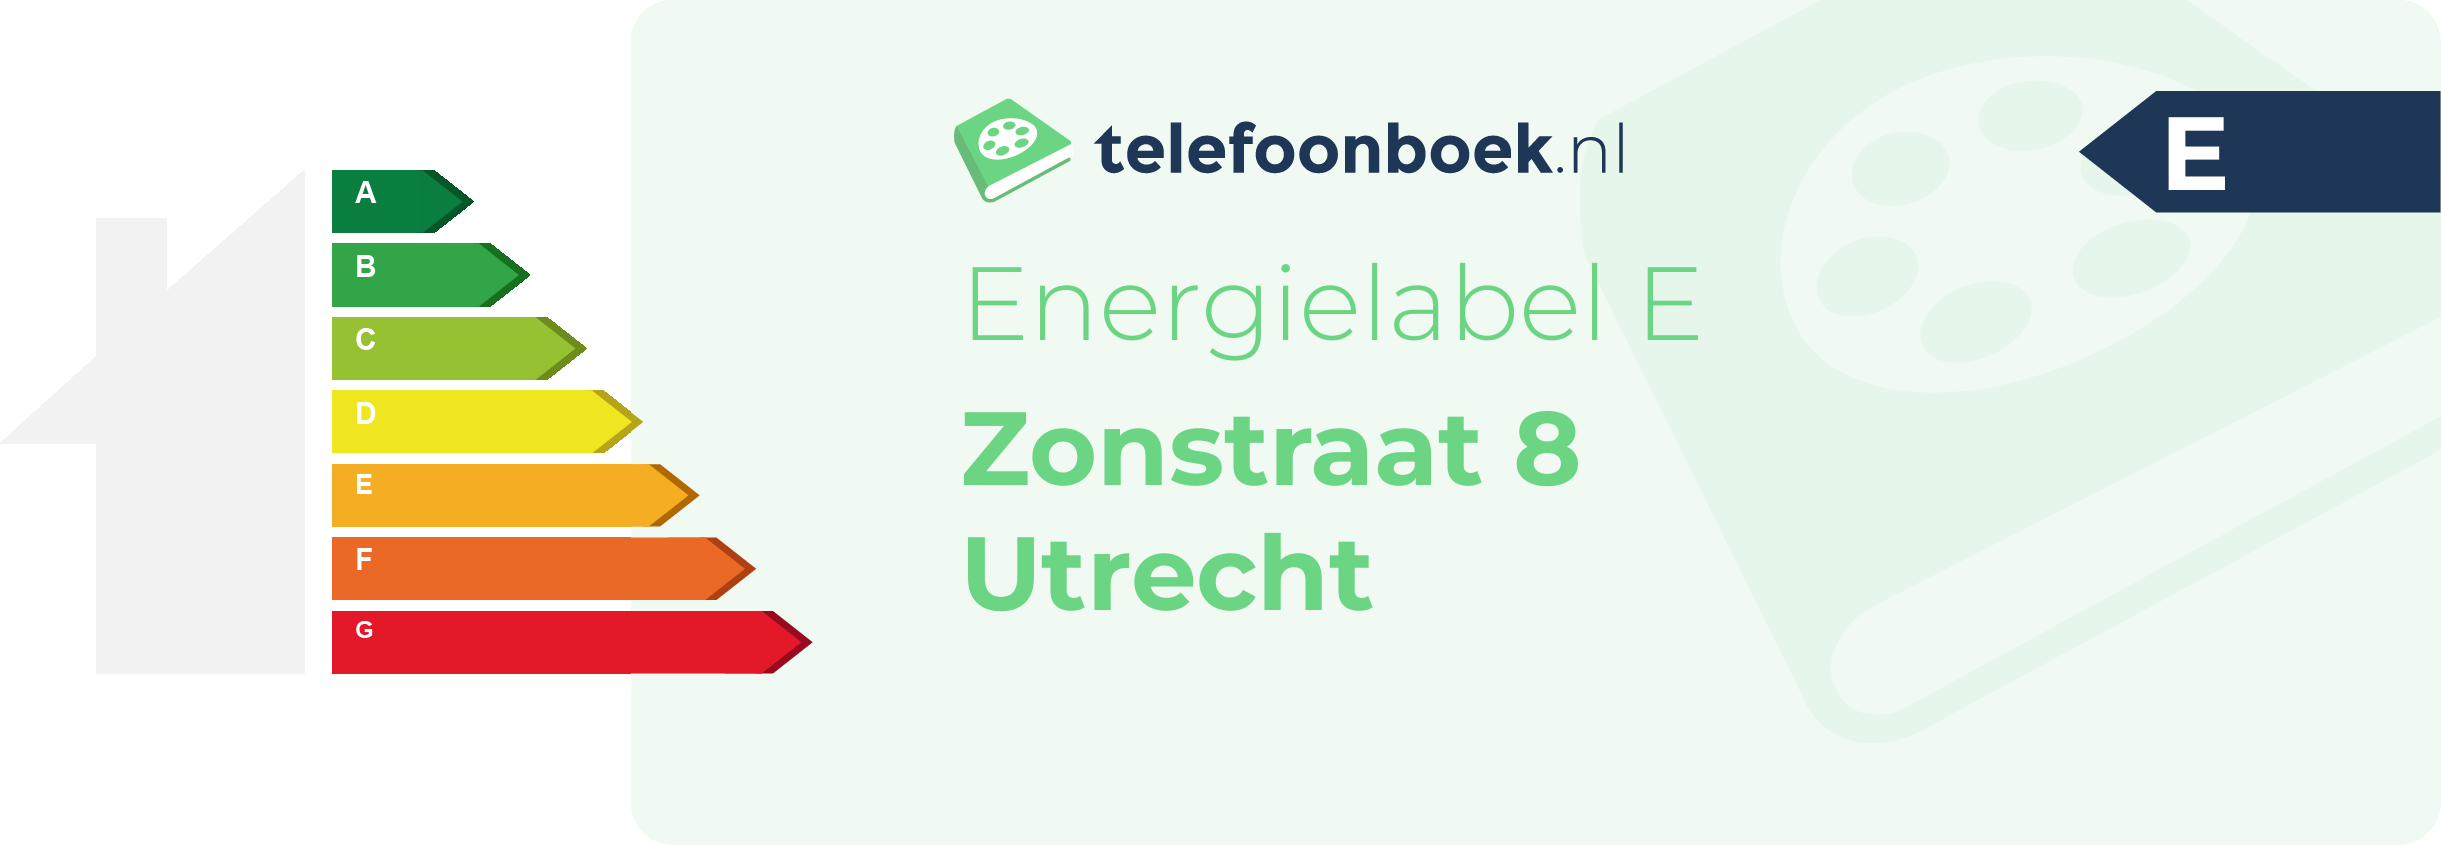 Energielabel Zonstraat 8 Utrecht